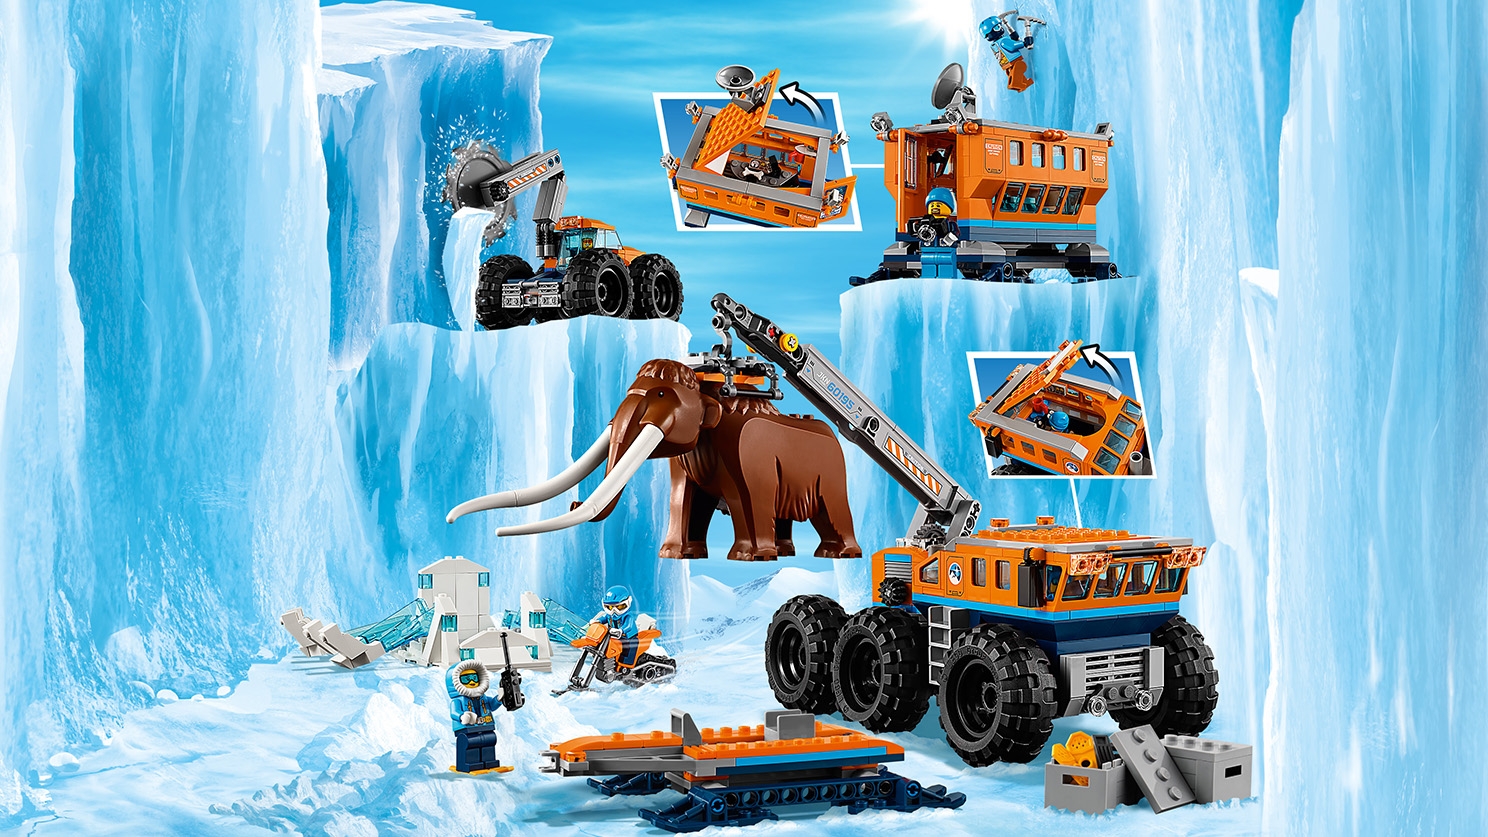 Ubrugelig Udflugt butik Arctic Mobile Exploration Base 60195 - LEGO® City Sets - LEGO.com for kids